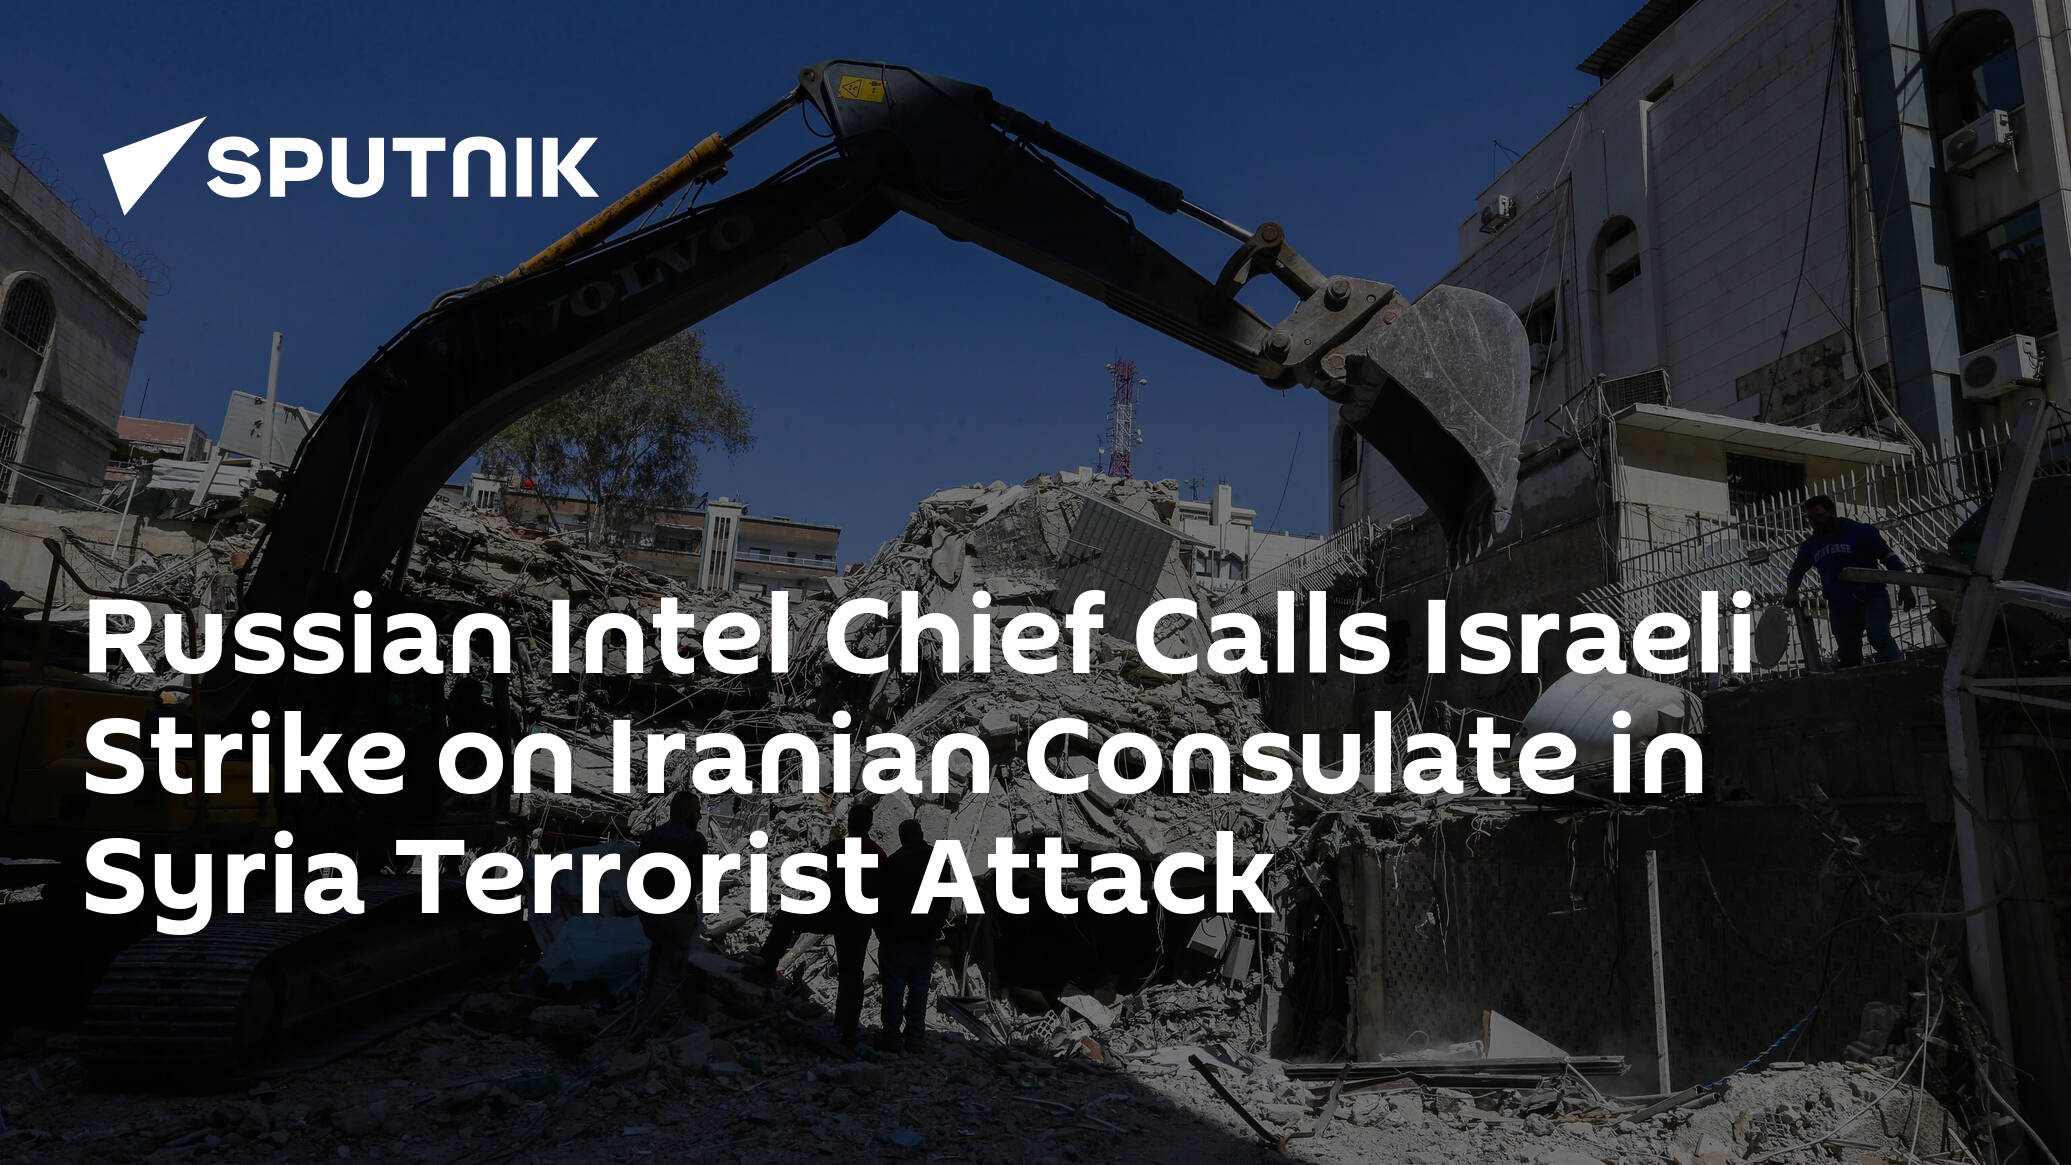 Russian Intel Chief Calls Israeli Strike on Iranian Consulate in Syria Terrorist Attack